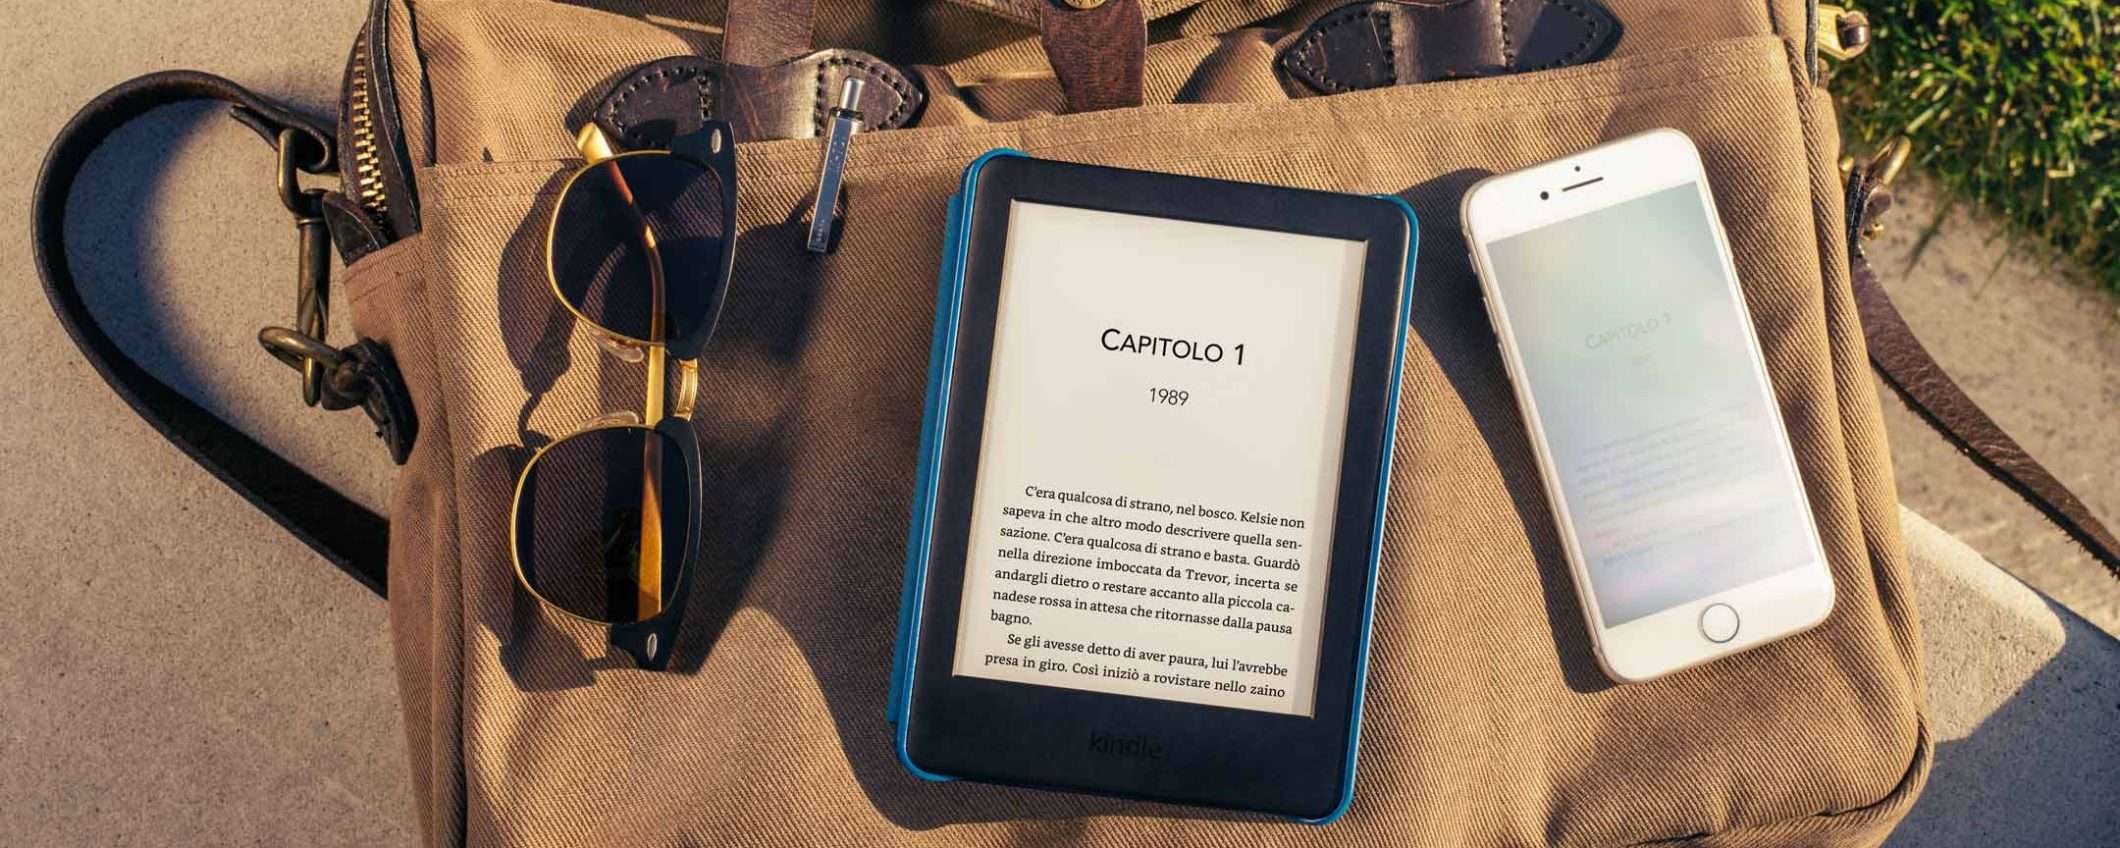 Ora gli eBook Kindle di Amazon si possono regalare